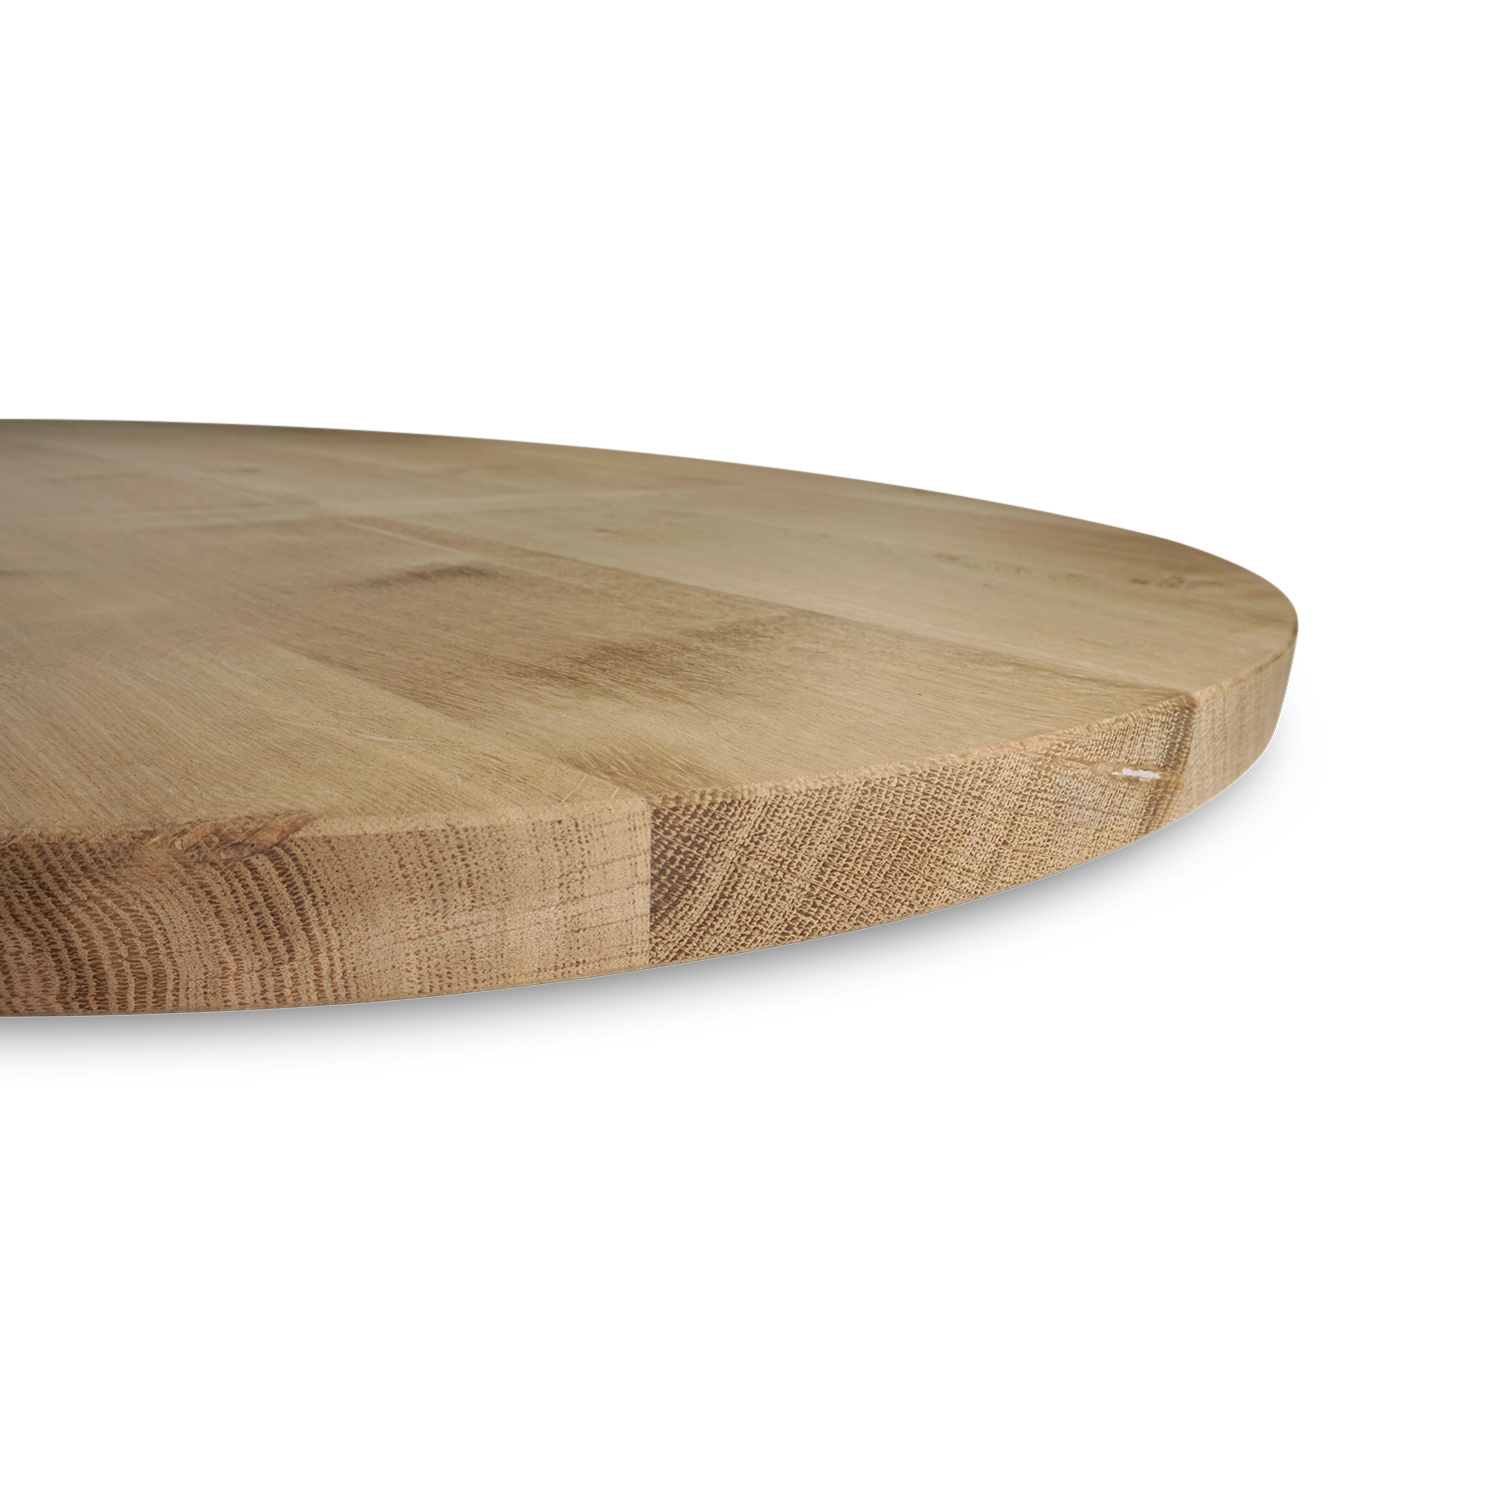  Tischplatte Eiche oval - 2 cm dick - Eichenholz Rustikal - Ellipse Eiche Tischplatte massiv - HF 8-12%